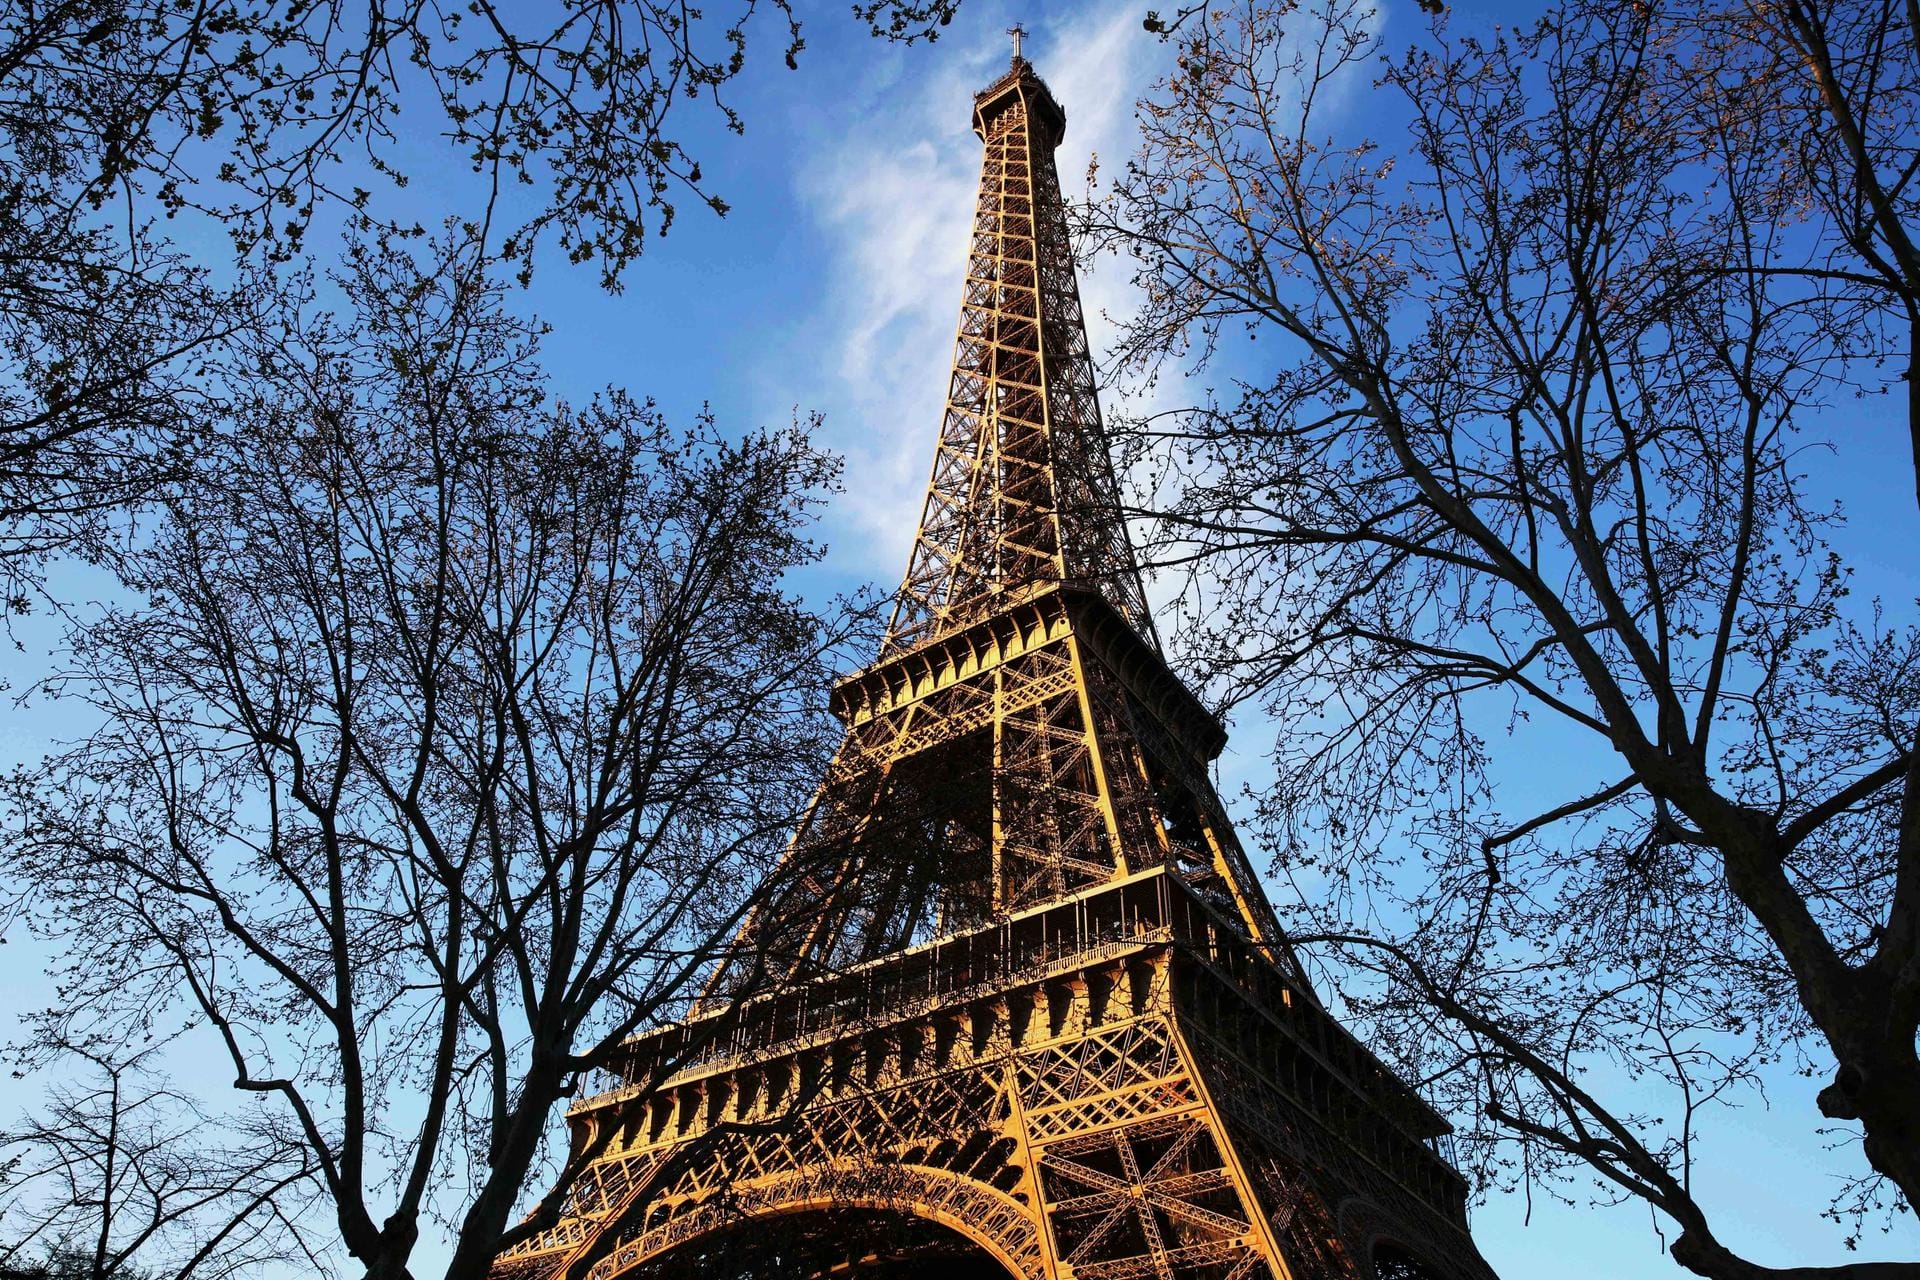 Der Eiffelturm vor blauem Himmel: Aus Anlass des 130-jährigen Bestehens des Eiffelturms finden am 30. März 2019 zahlreiche Veranstaltungen statt.